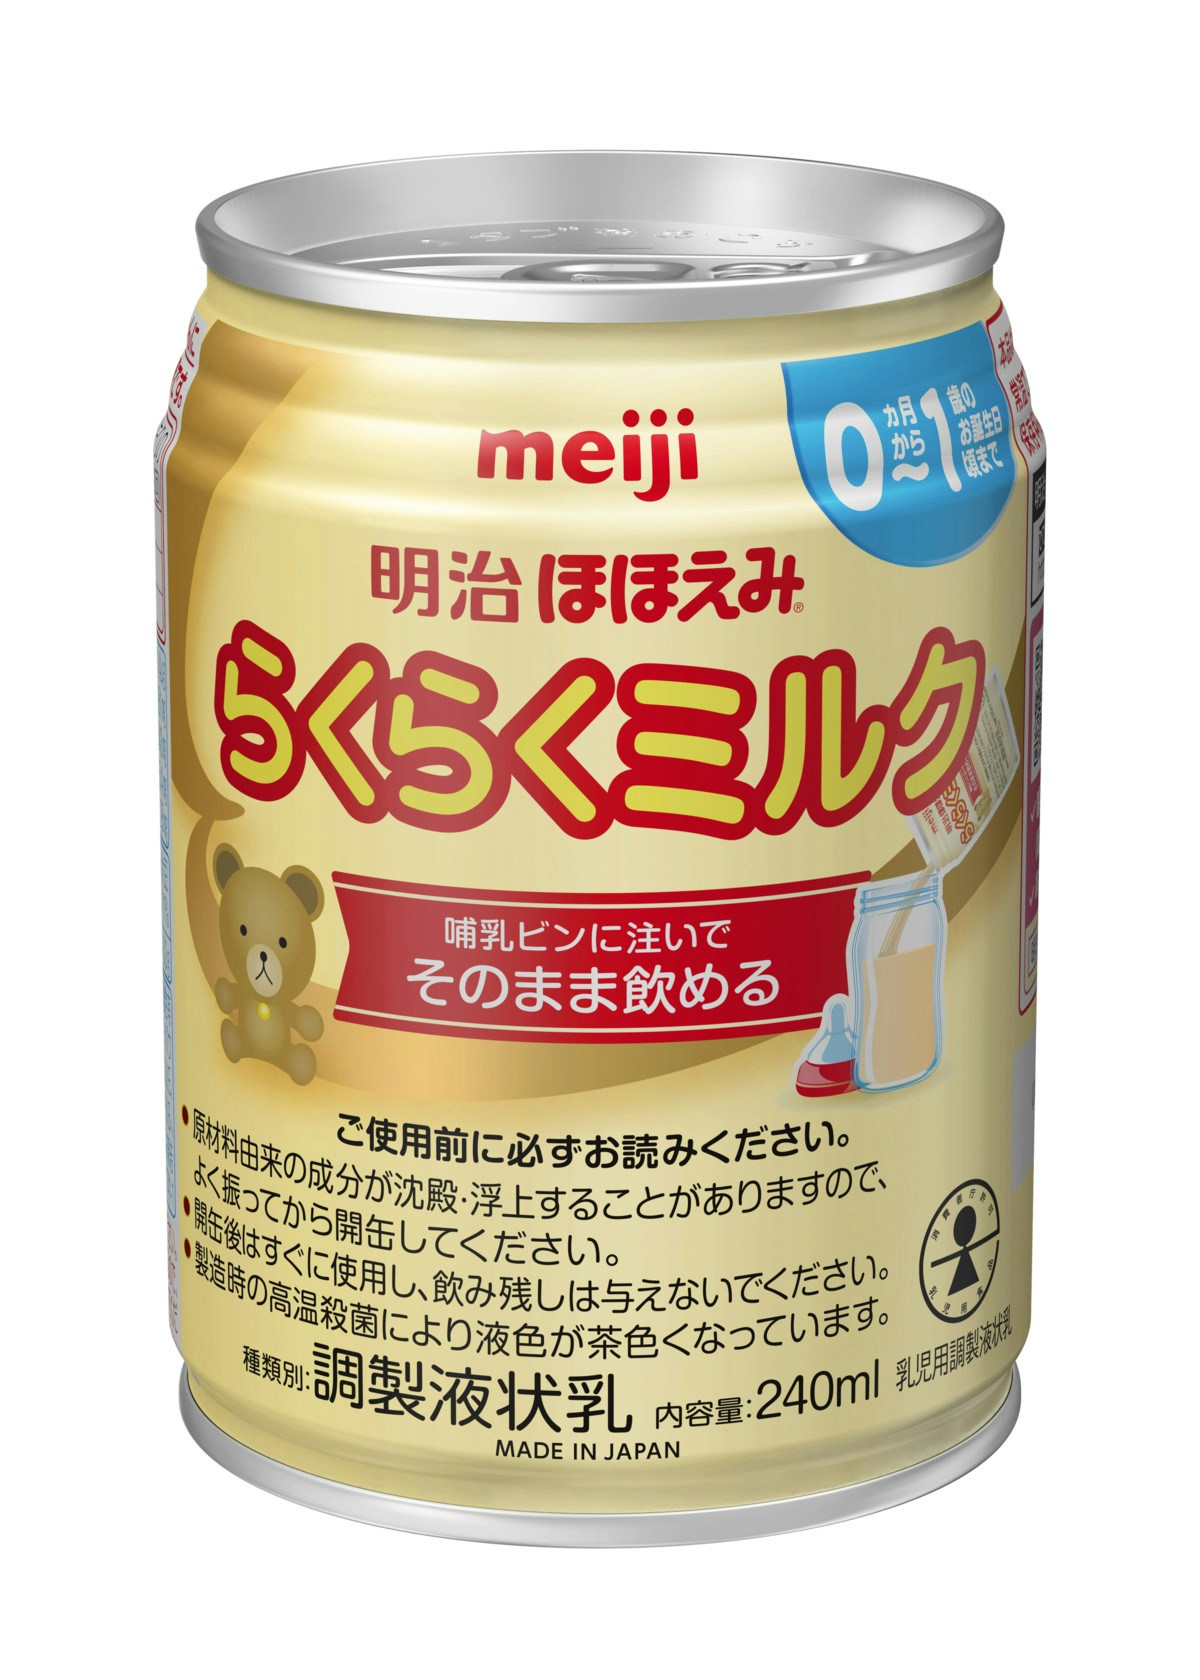 ほほえみミルク缶(液体ミルク)200ml×24本 賞味期限 2025.1まで